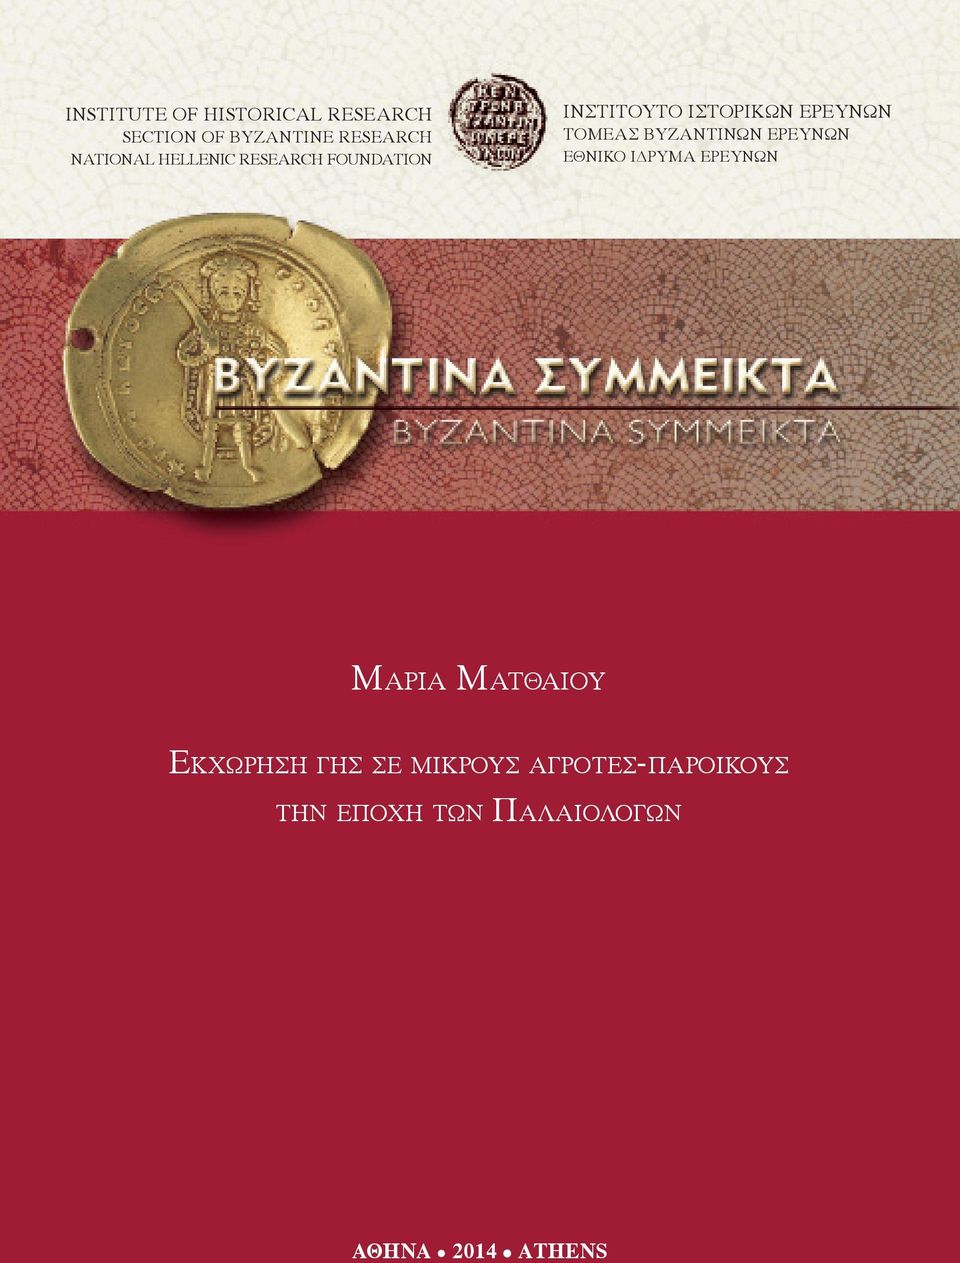 Εκχώρηση Geography γης of σε the μικρούς Provincial αγρότες-παροίκους Administration of the Byzantine